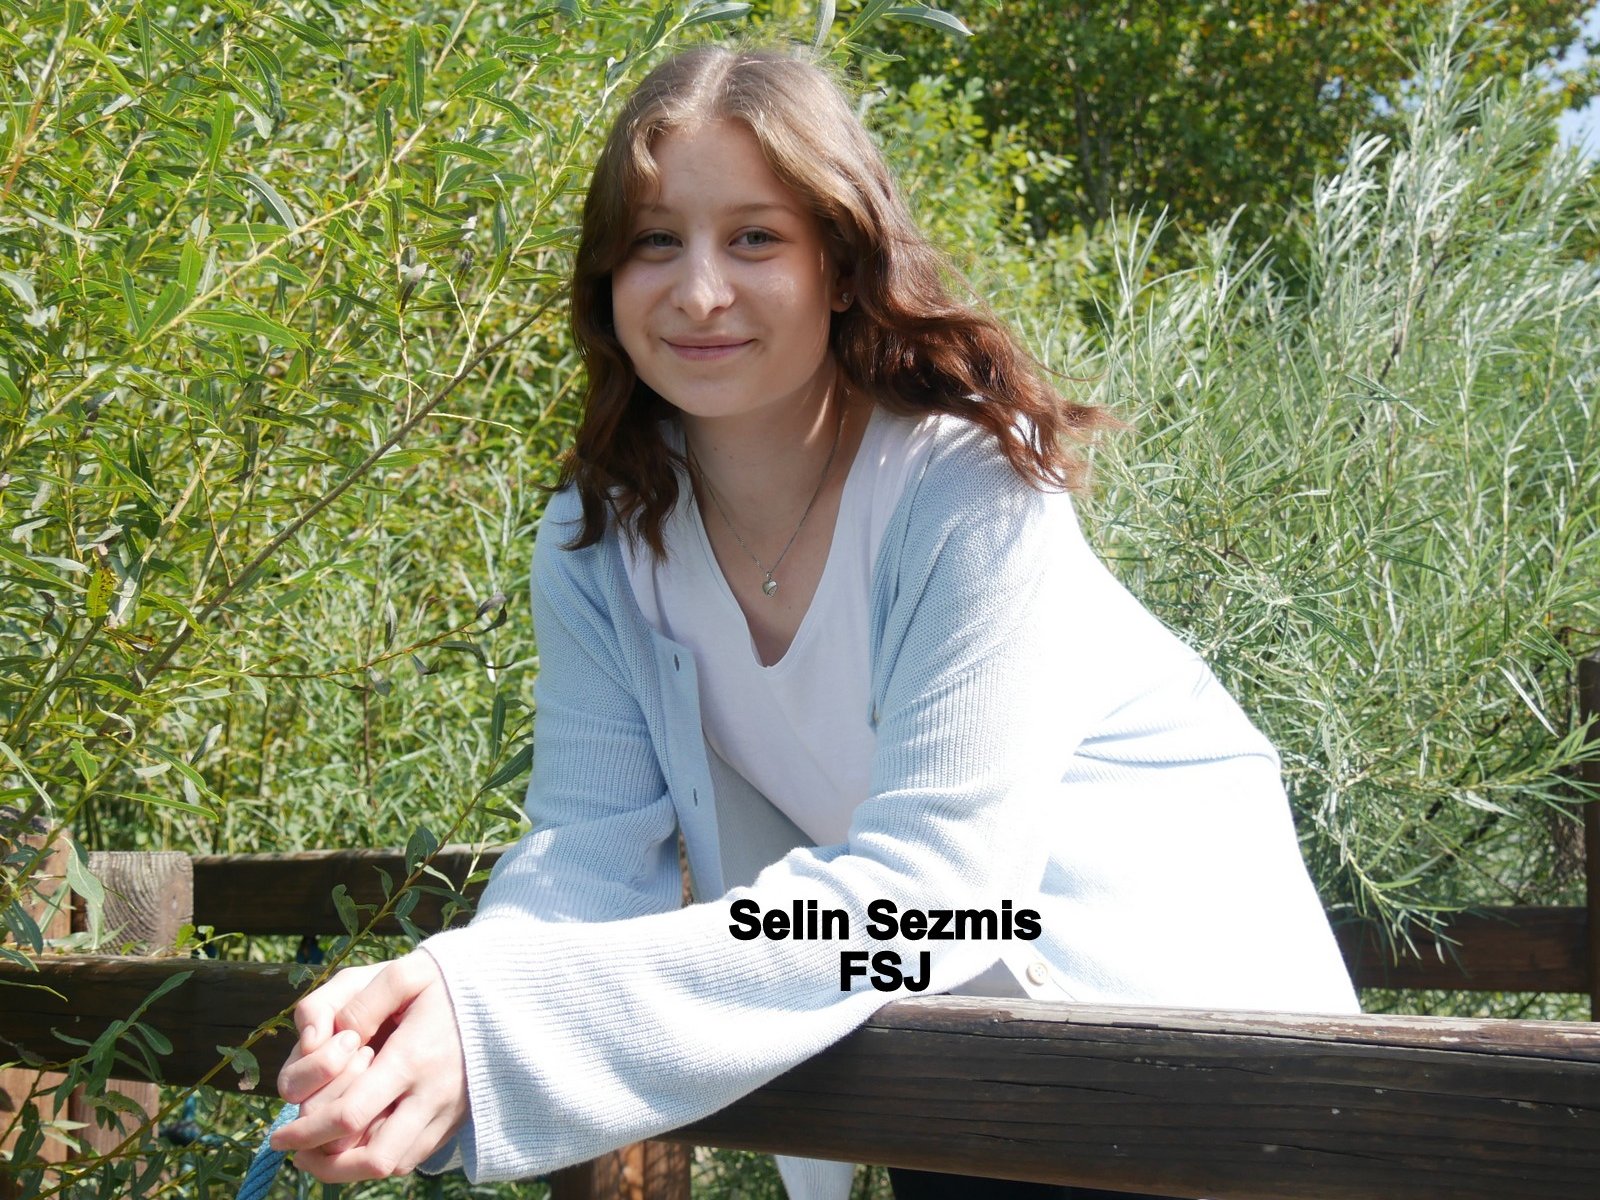 Selin Sezmis